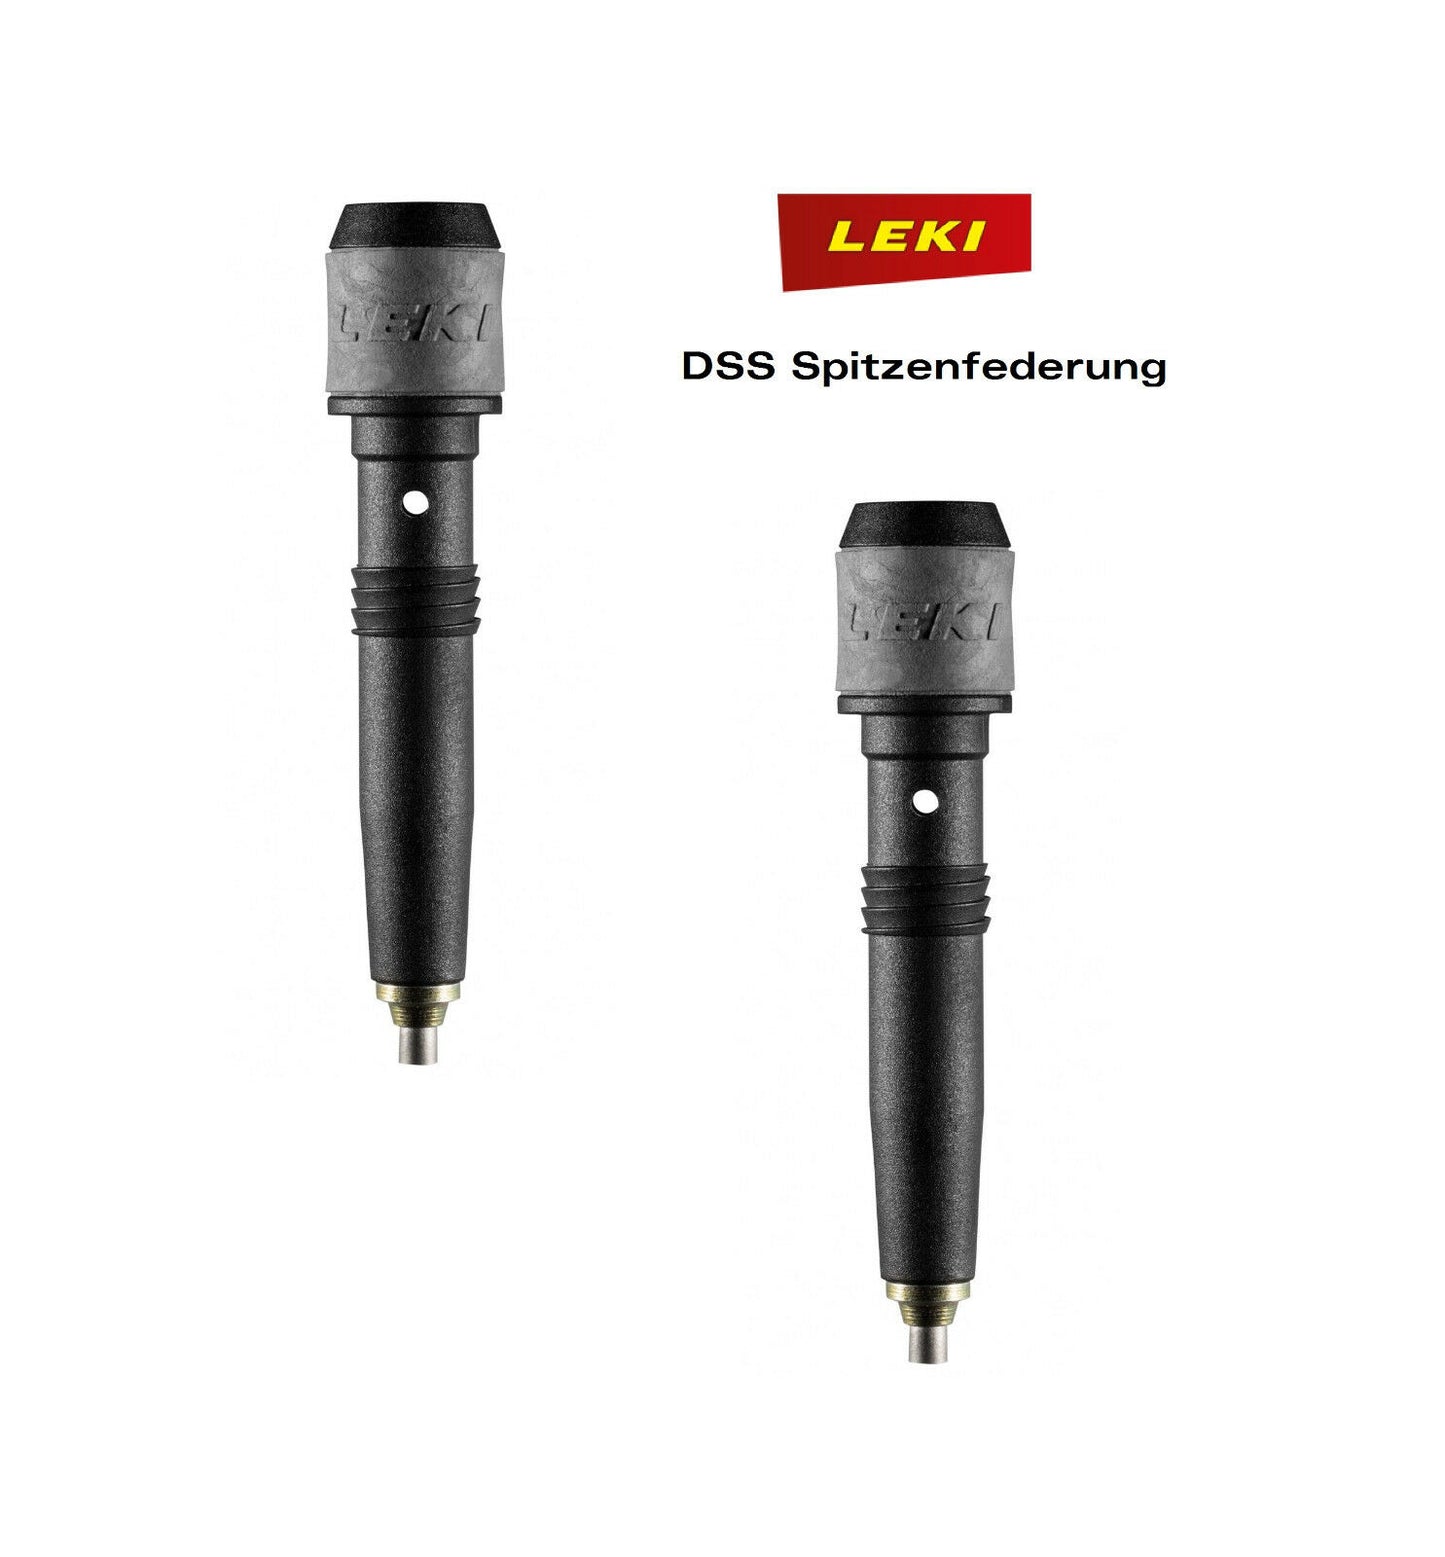 Leki DSS Ersatzspitze Spitzenfederung - für Leki Trekkingstöcke 12mm Unterteil